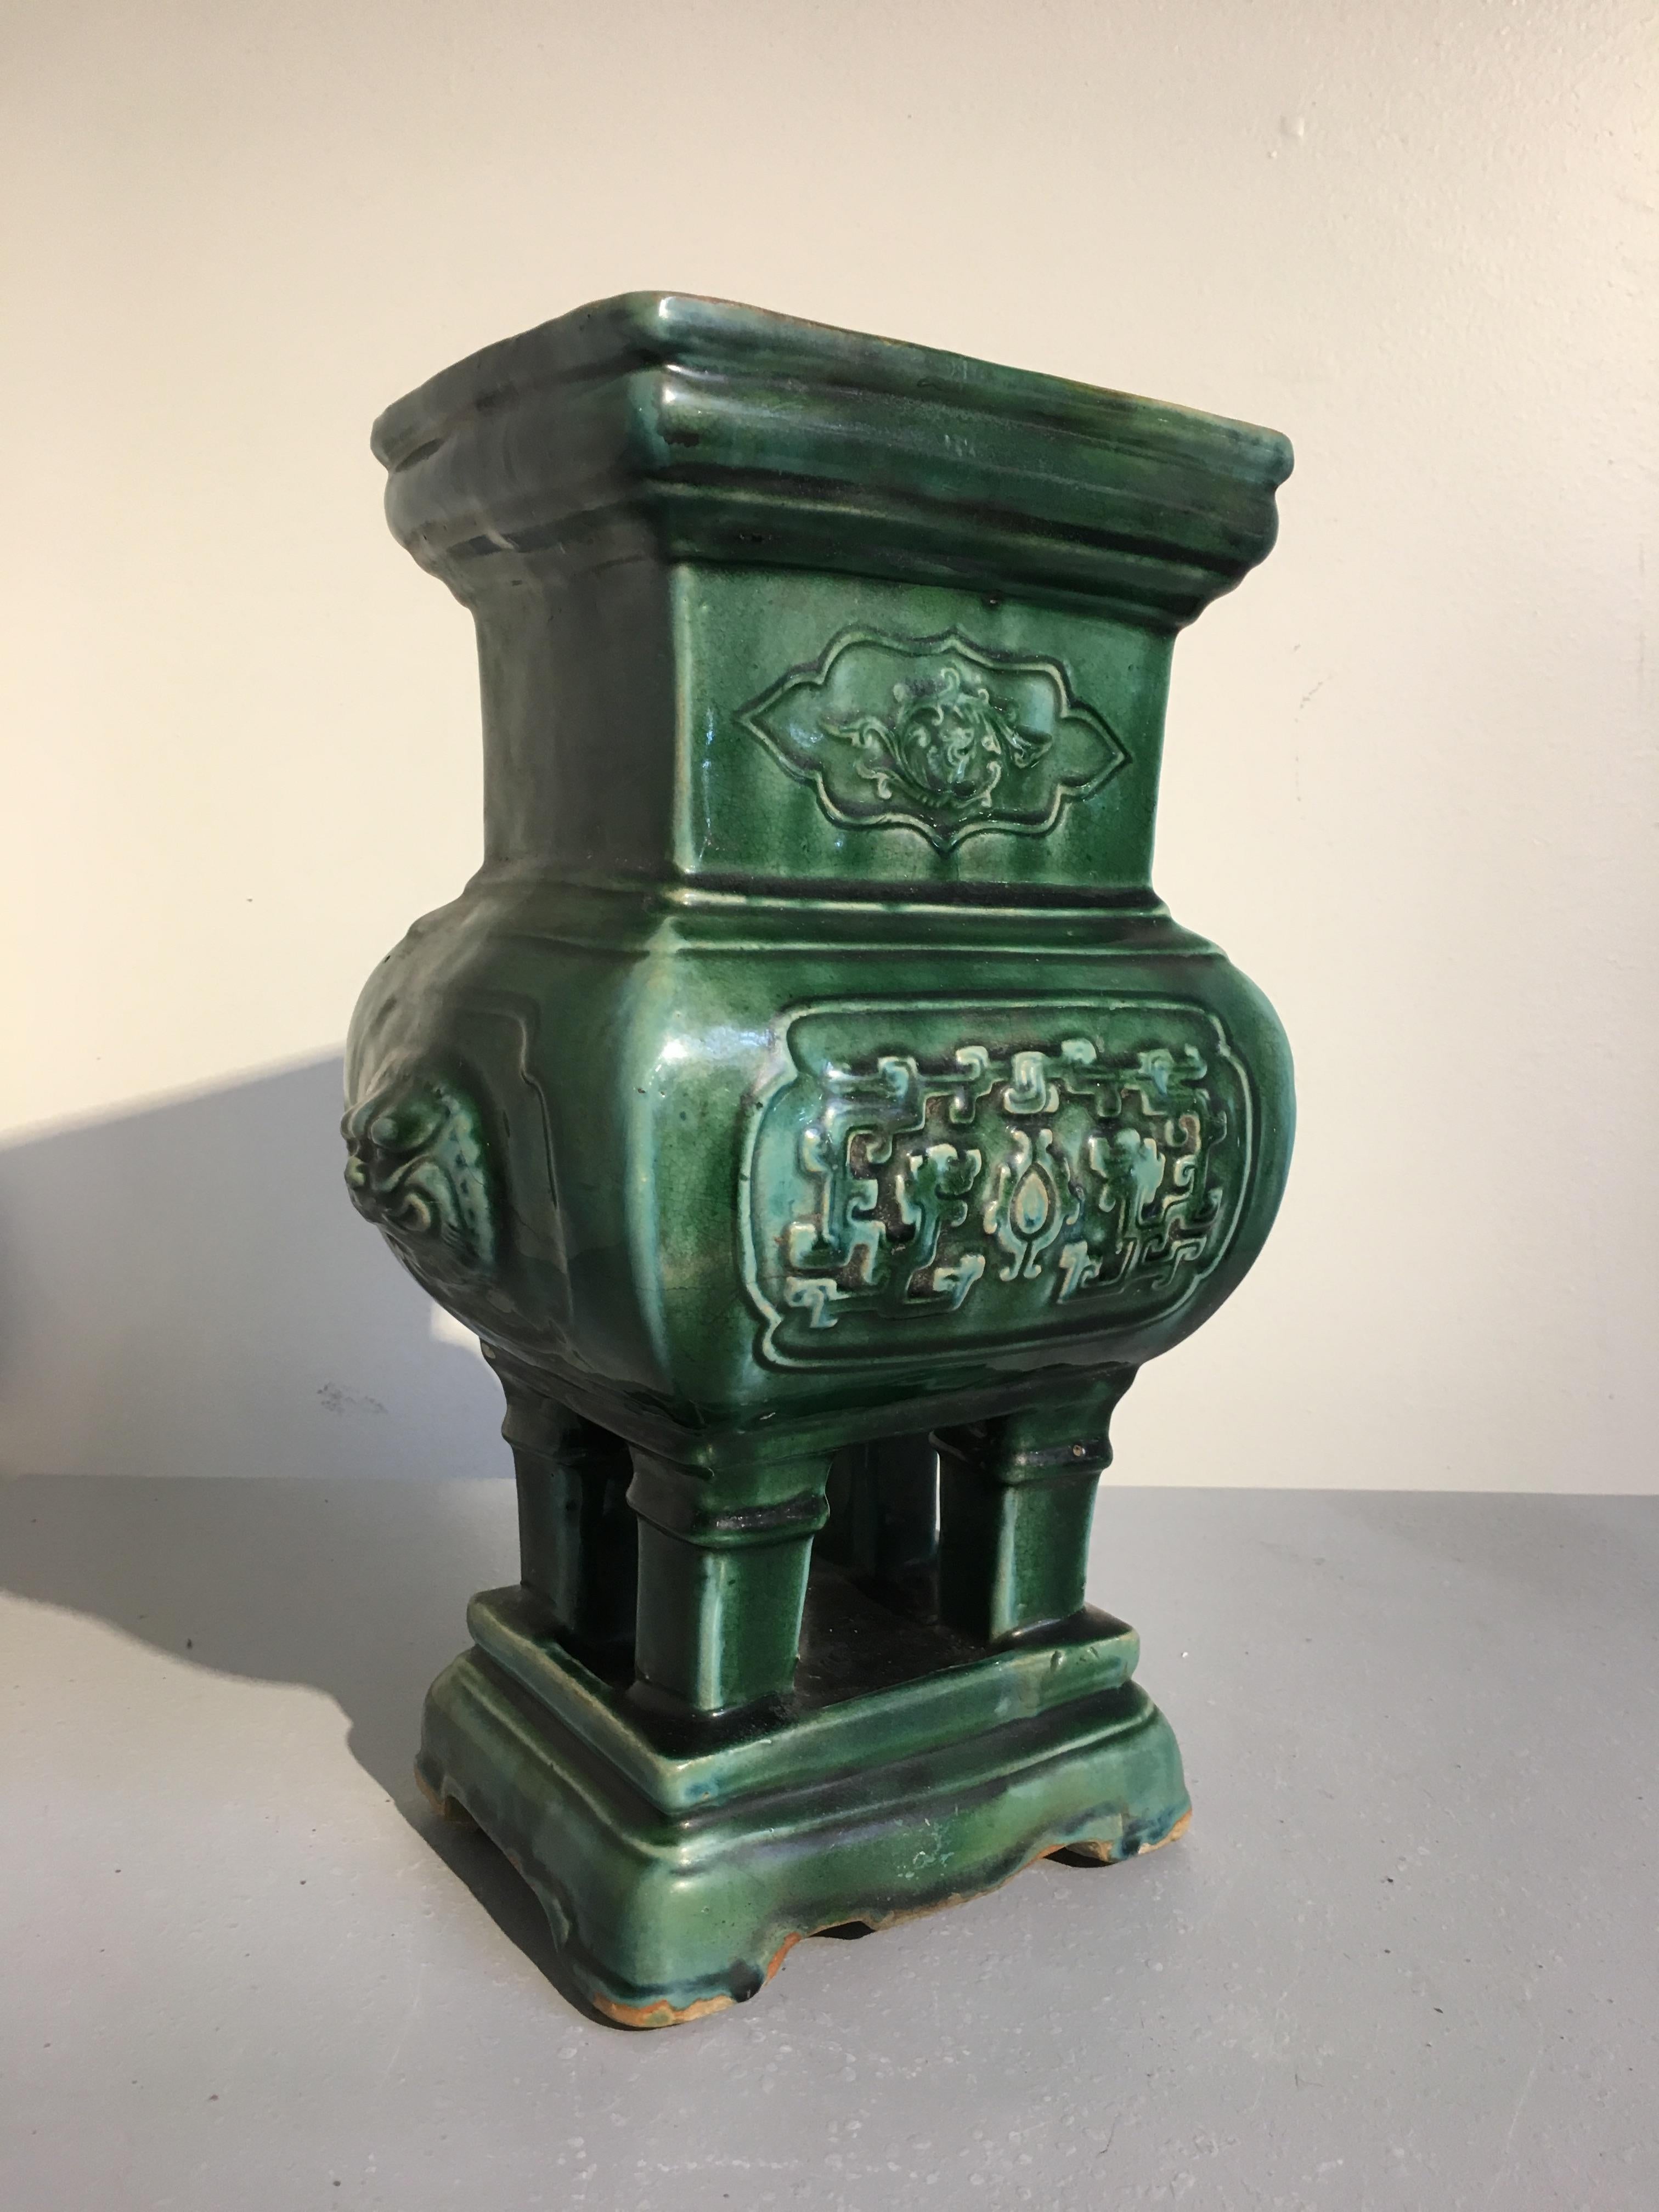 Ein charmantes chinesisches grün glasiertes Keramikgefäß oder Räuchergefäß, Qing-Dynastie, spätes 19. Jahrhundert. Jetzt auch als Jardiniere oder Vase verwendbar.
Das Weihrauchgefäß ist tiefgrün glasiert, in Nachahmung von Bronzemodellen, und steht